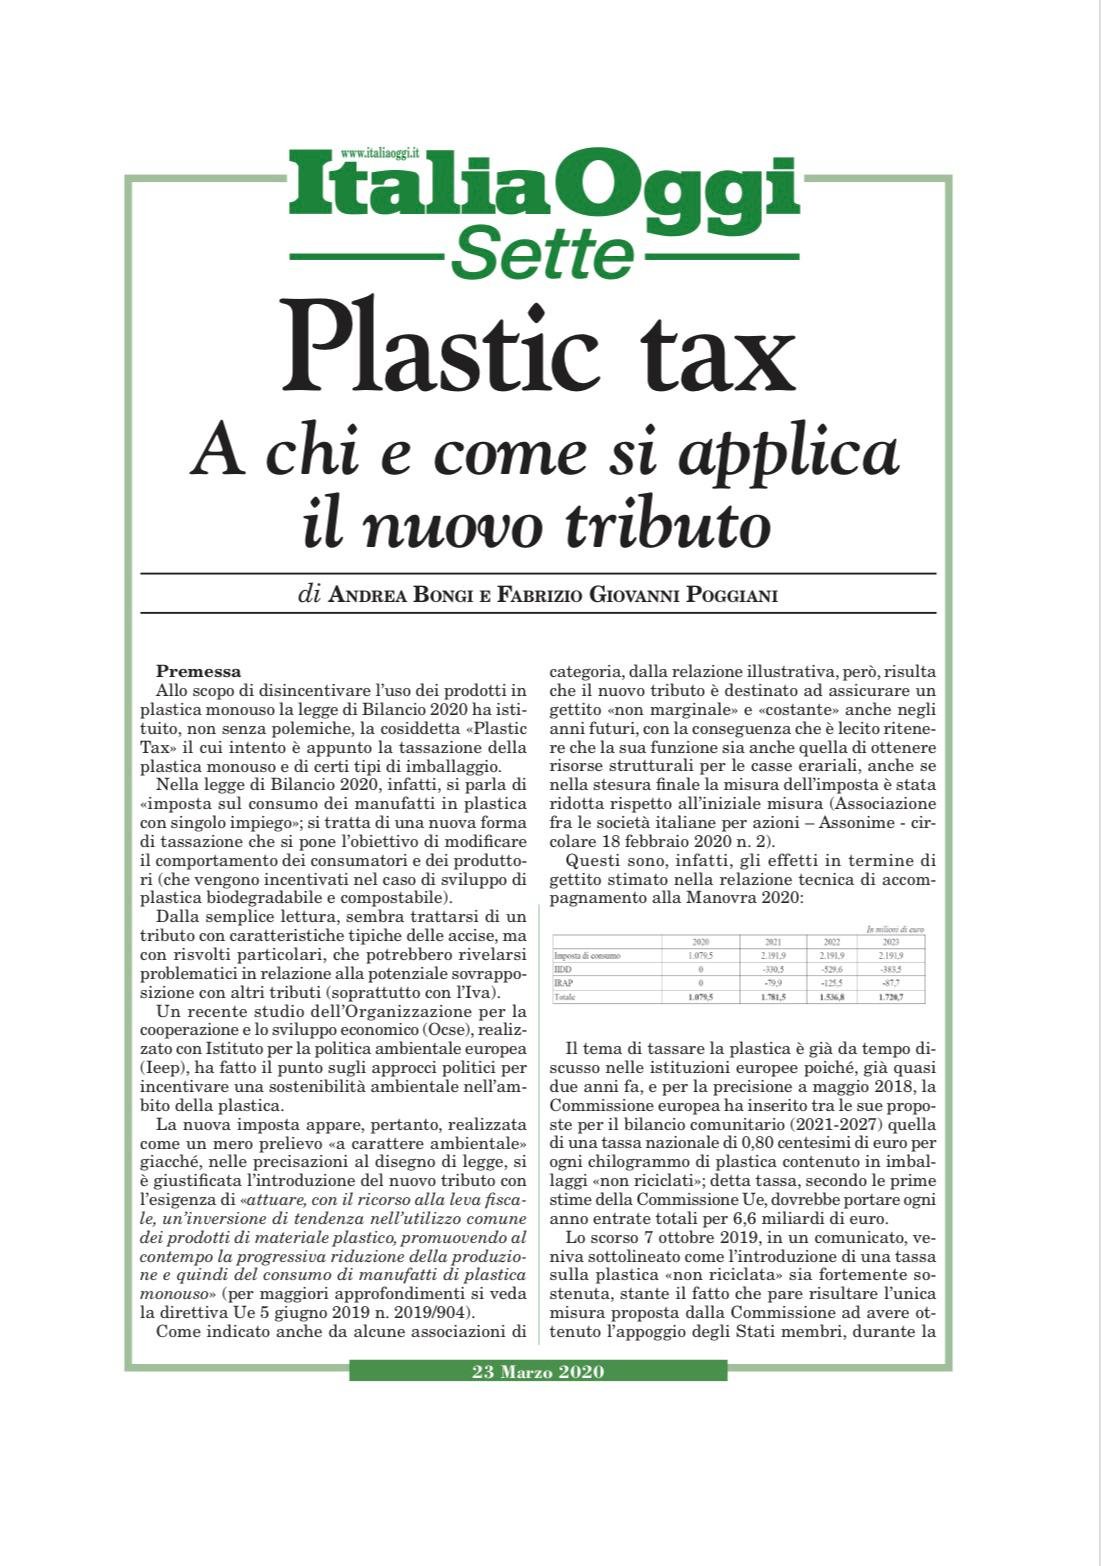 Plastic tax